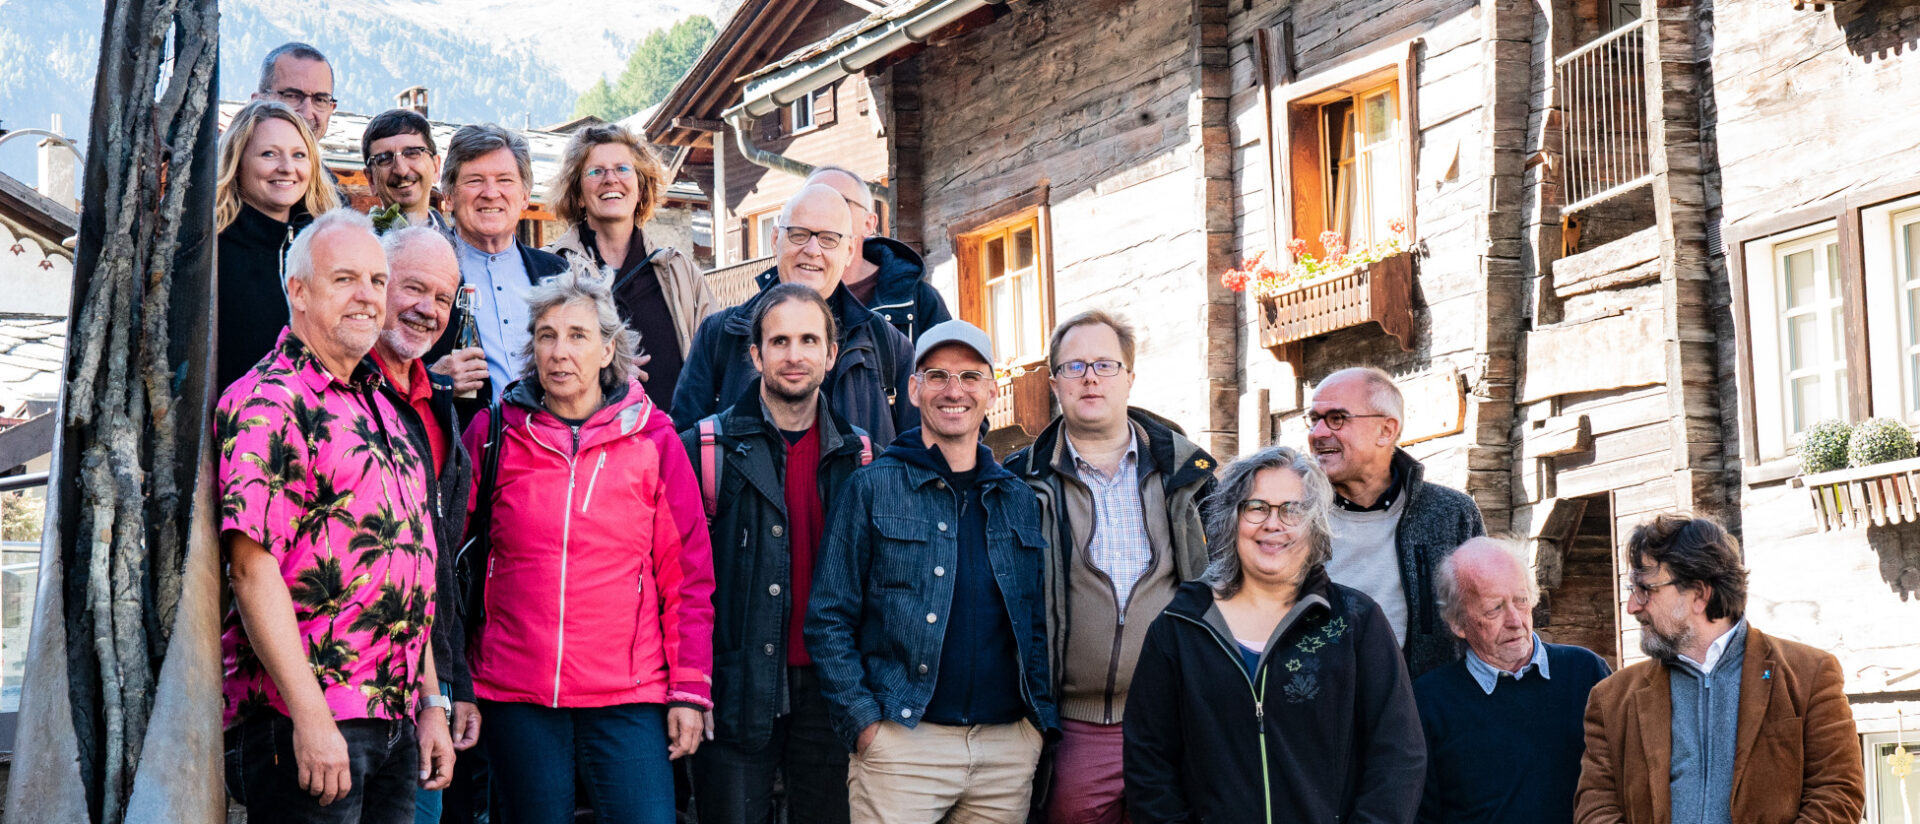 Weiterbildung für reformierte Pfarrerinnen und Pfarrer in Visp und Zermatt